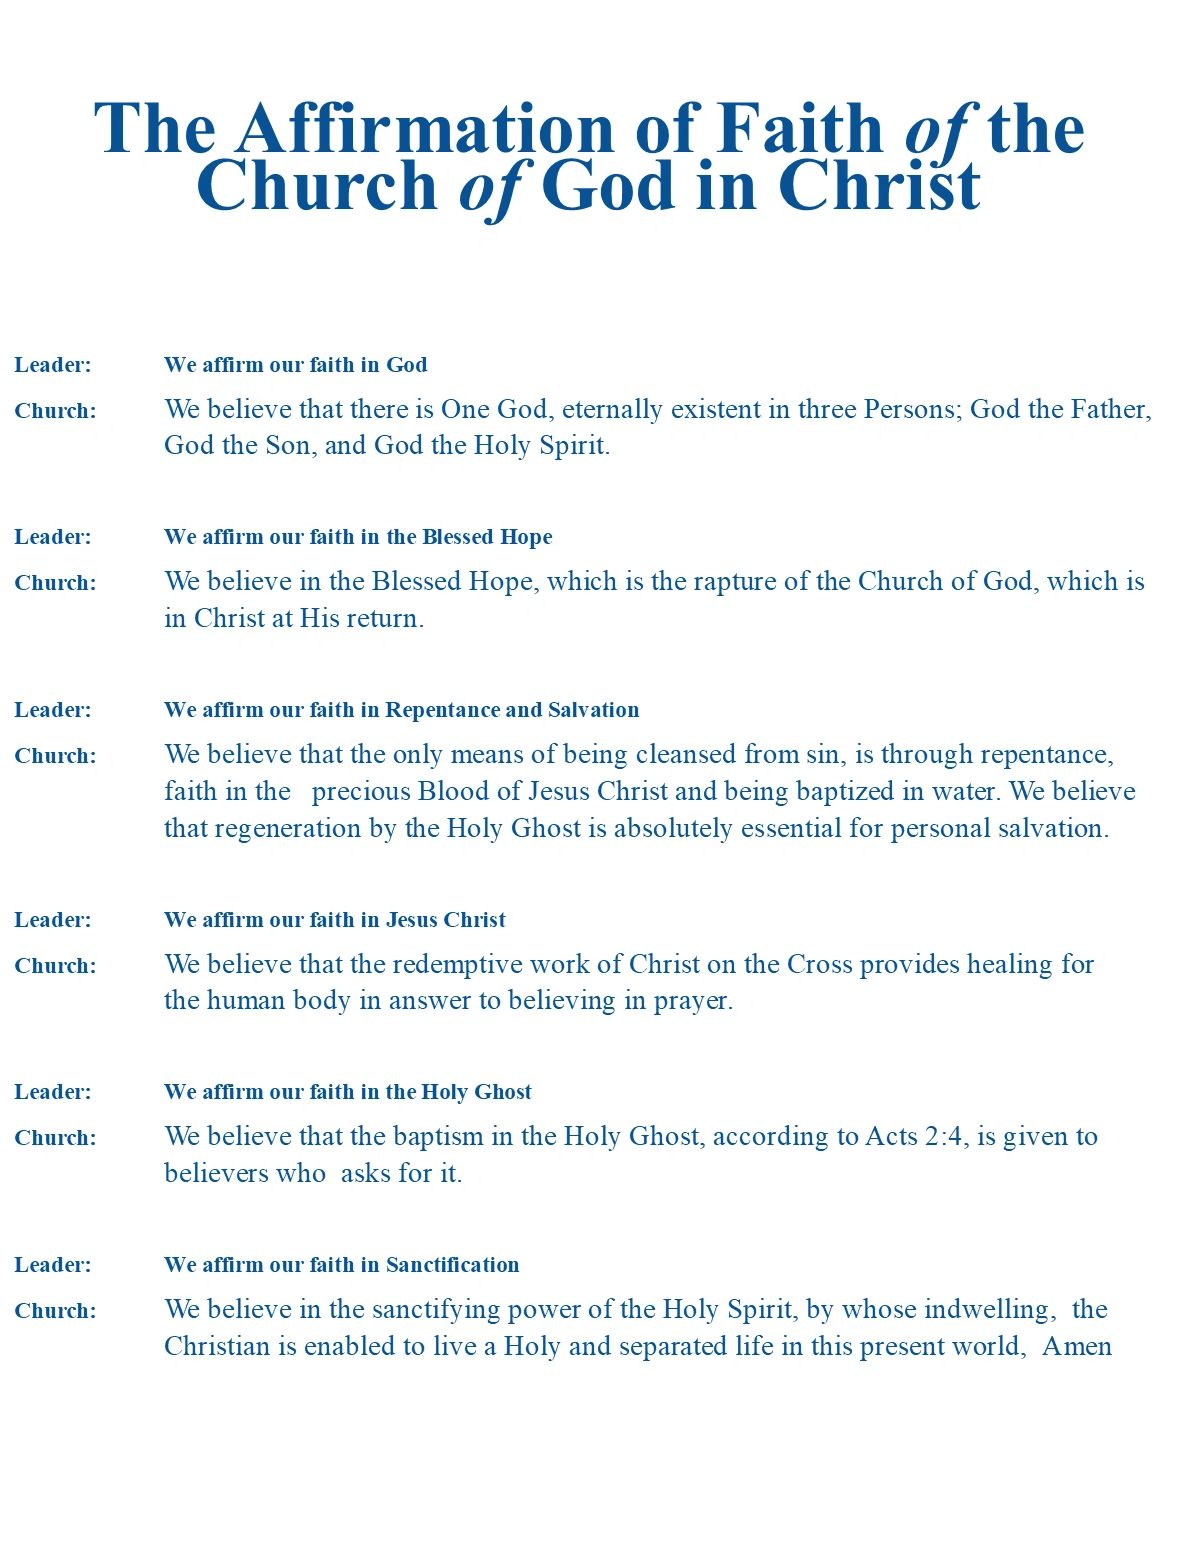 Church of God in Christ - Affirmation of Faith